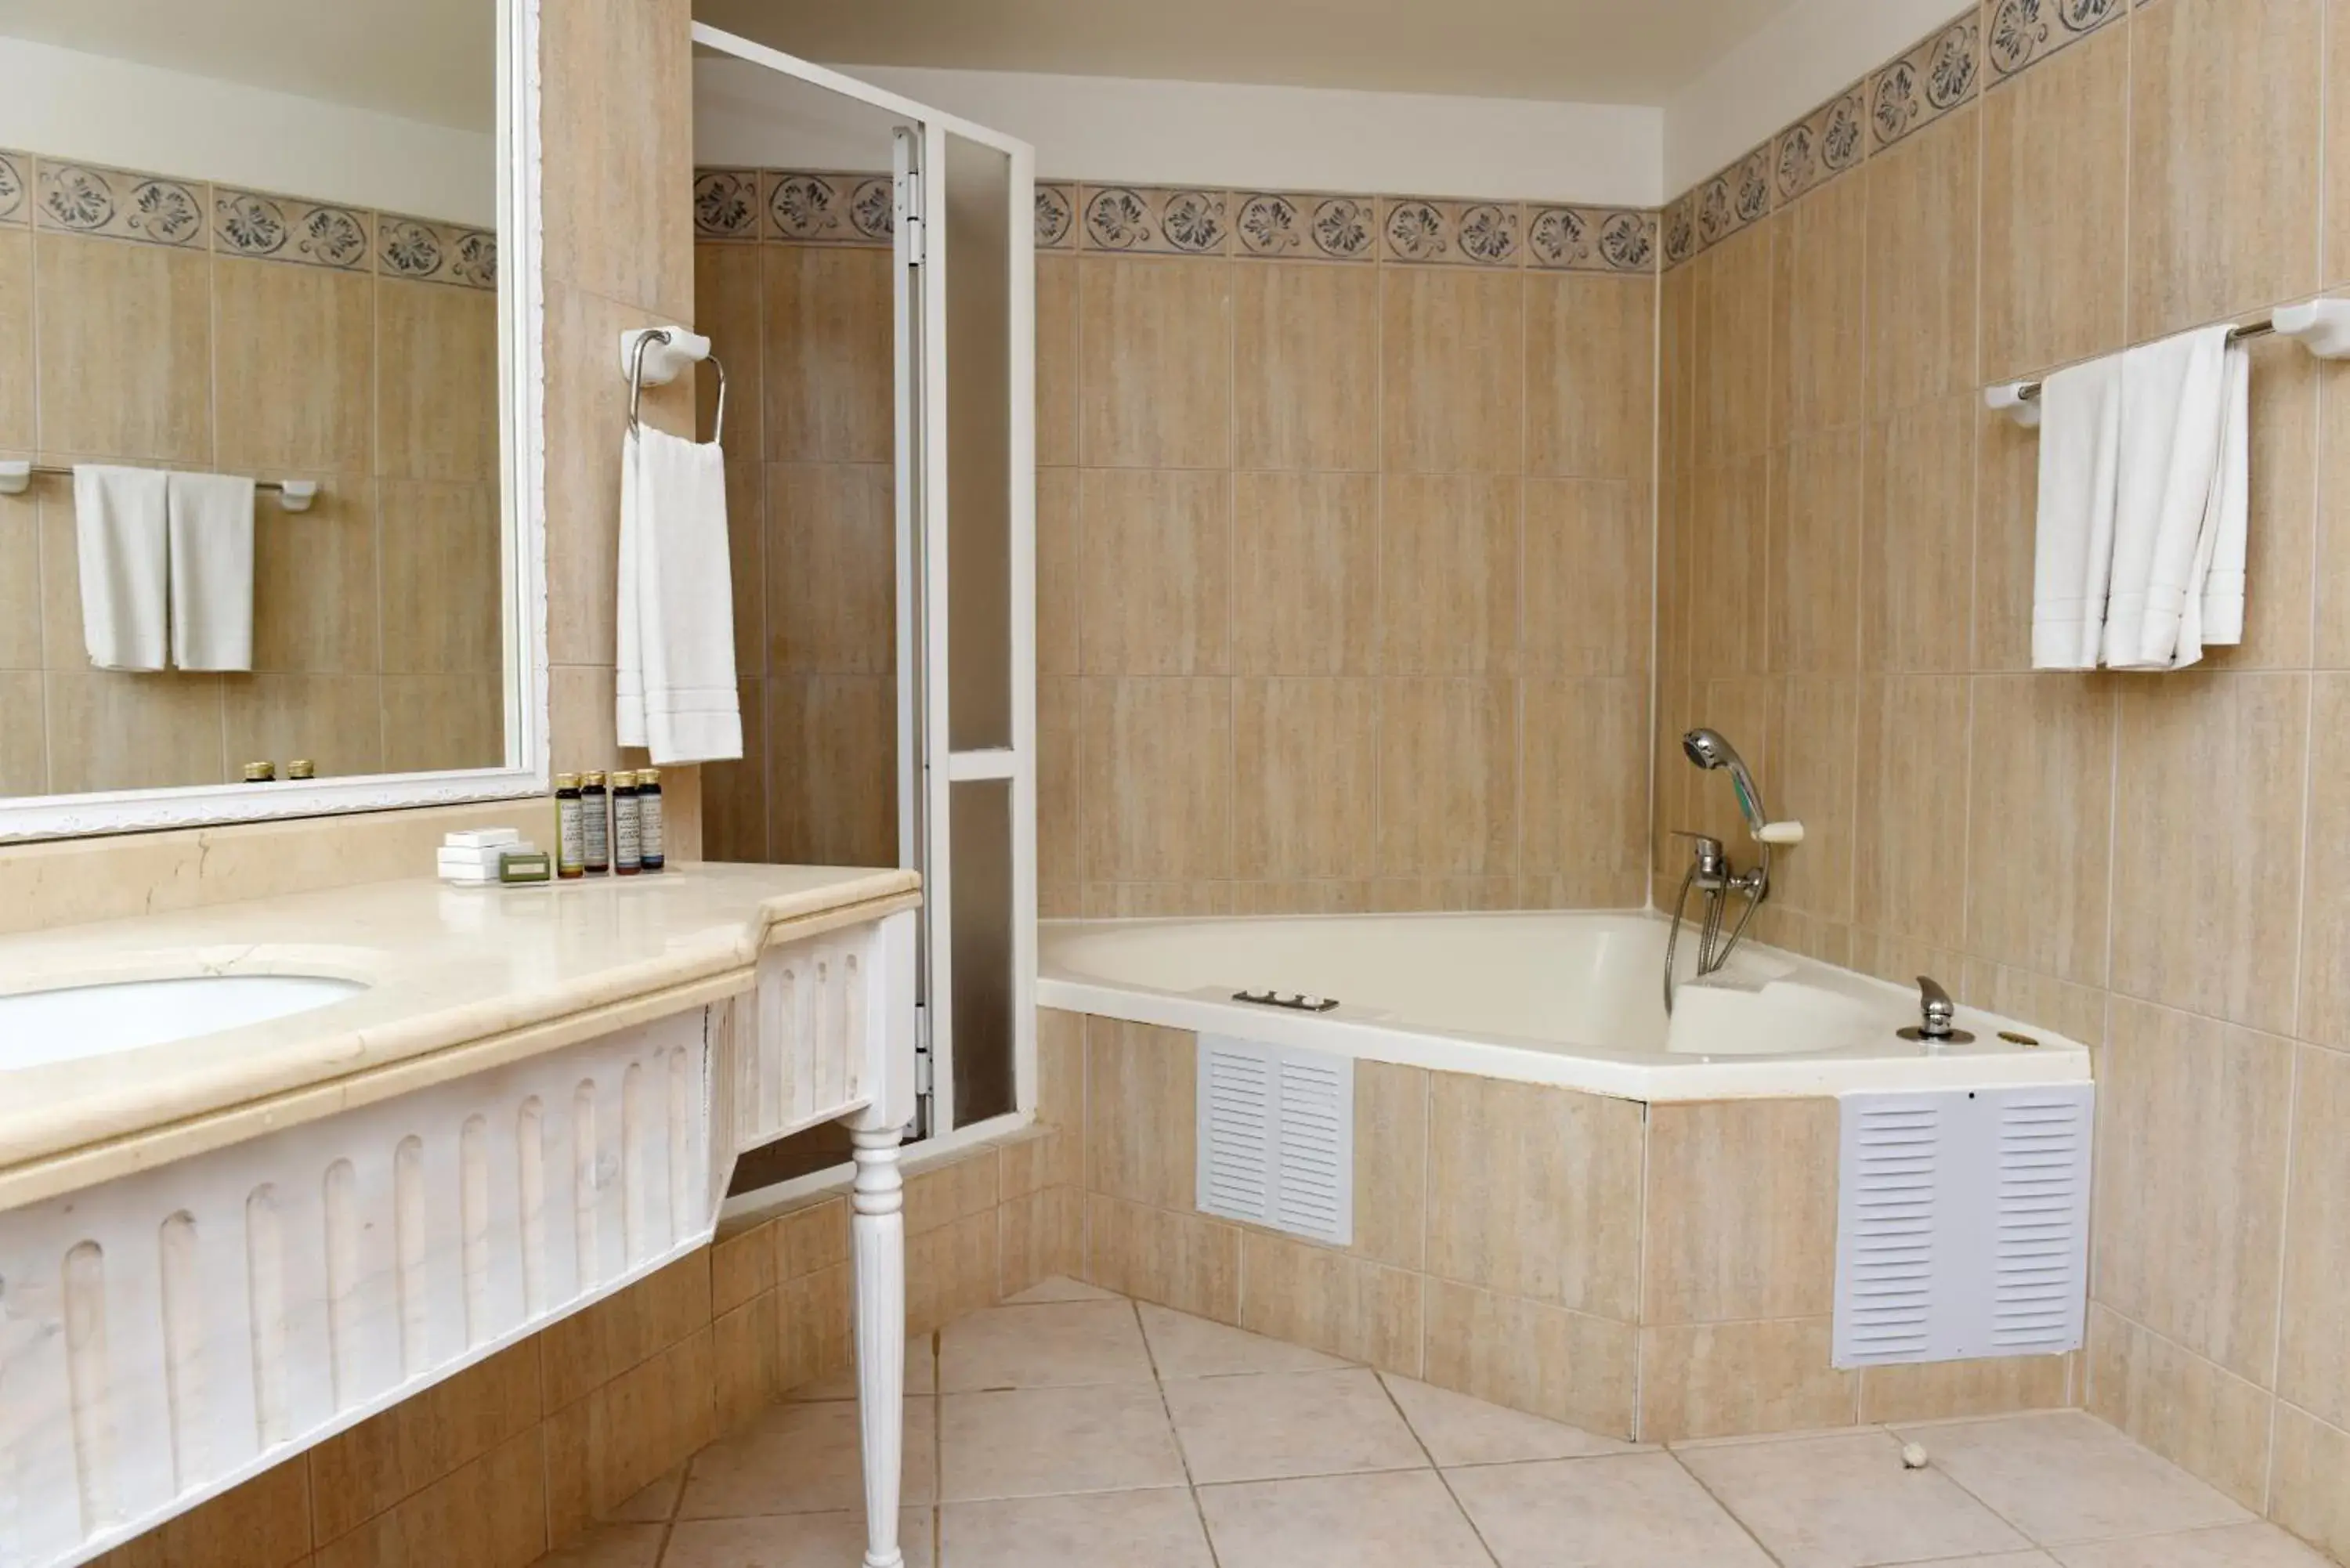 Bathroom in Hotel Bellavista